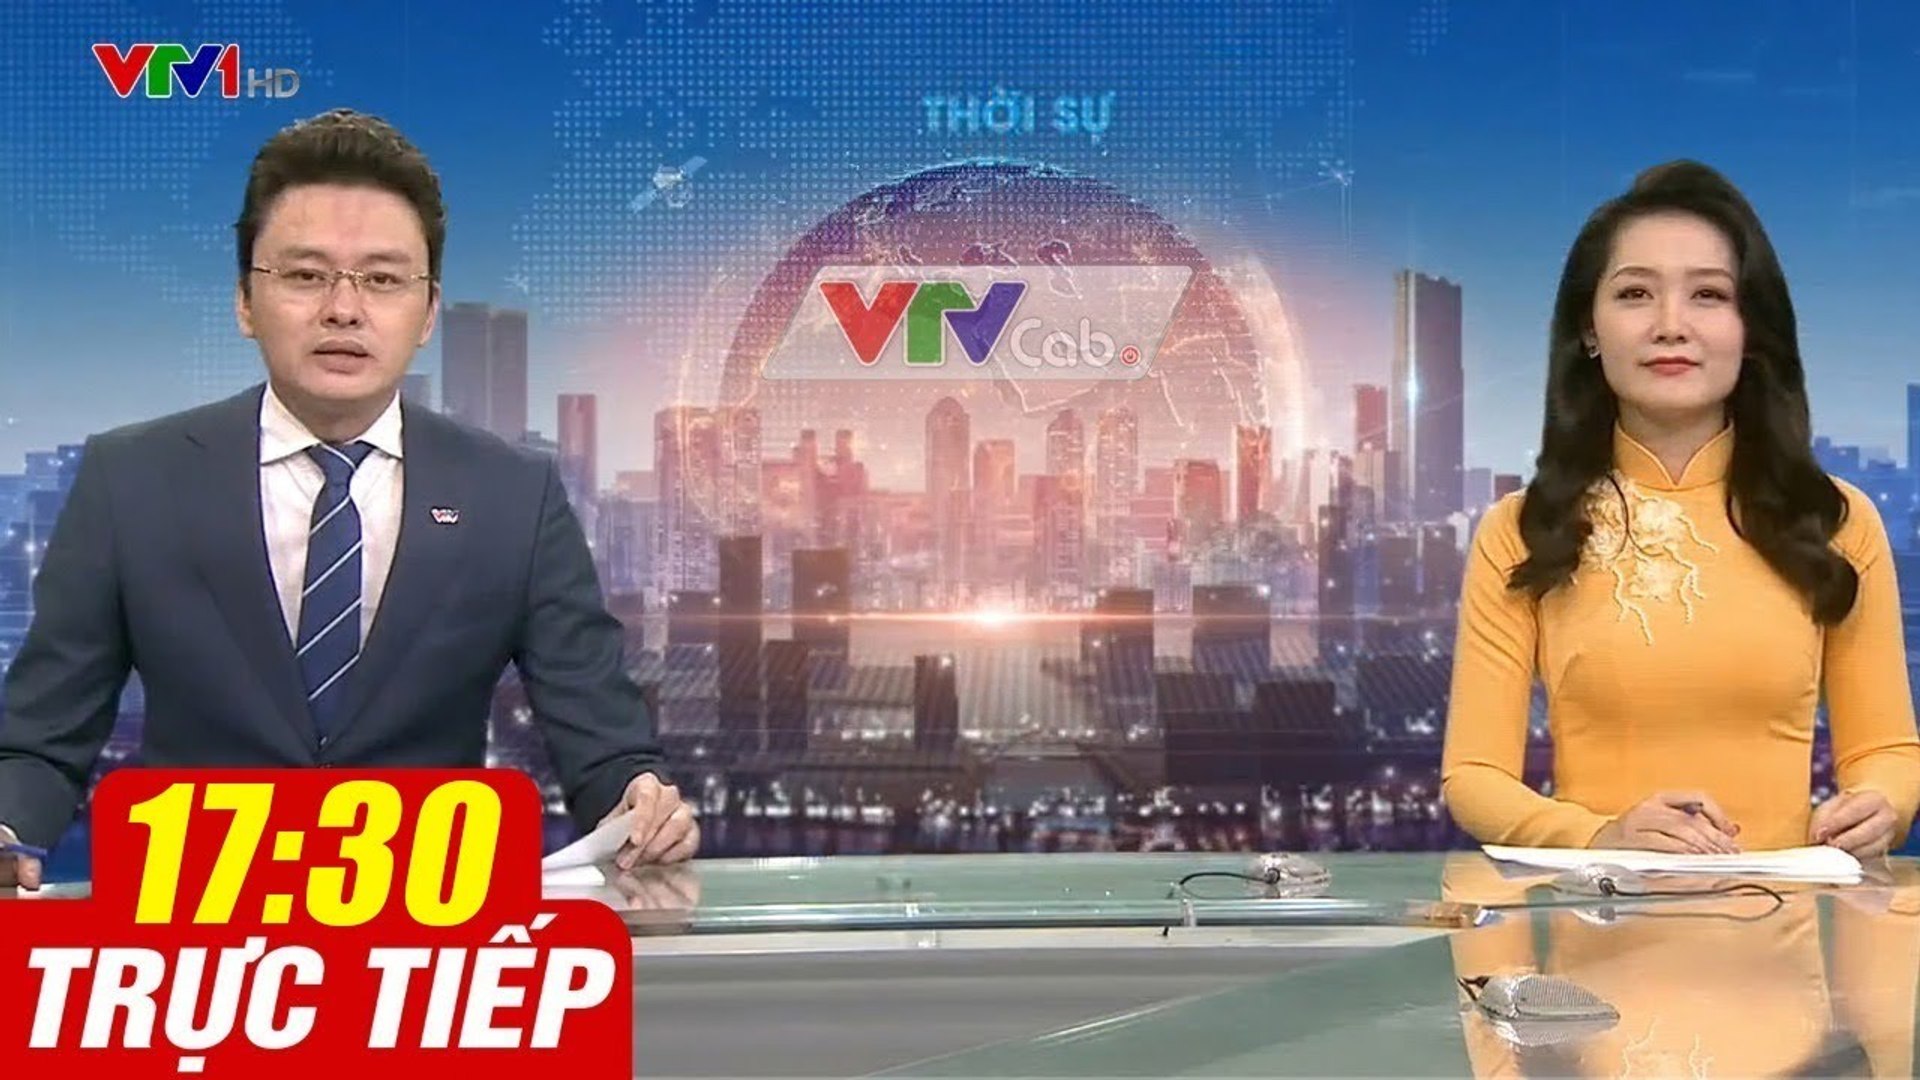 Trực Tiếp VIỆT NAM HÔM NAY 17h30 ngày 16.10.2020  Tin tức thời sự VTV1 mới nhất hôm nay